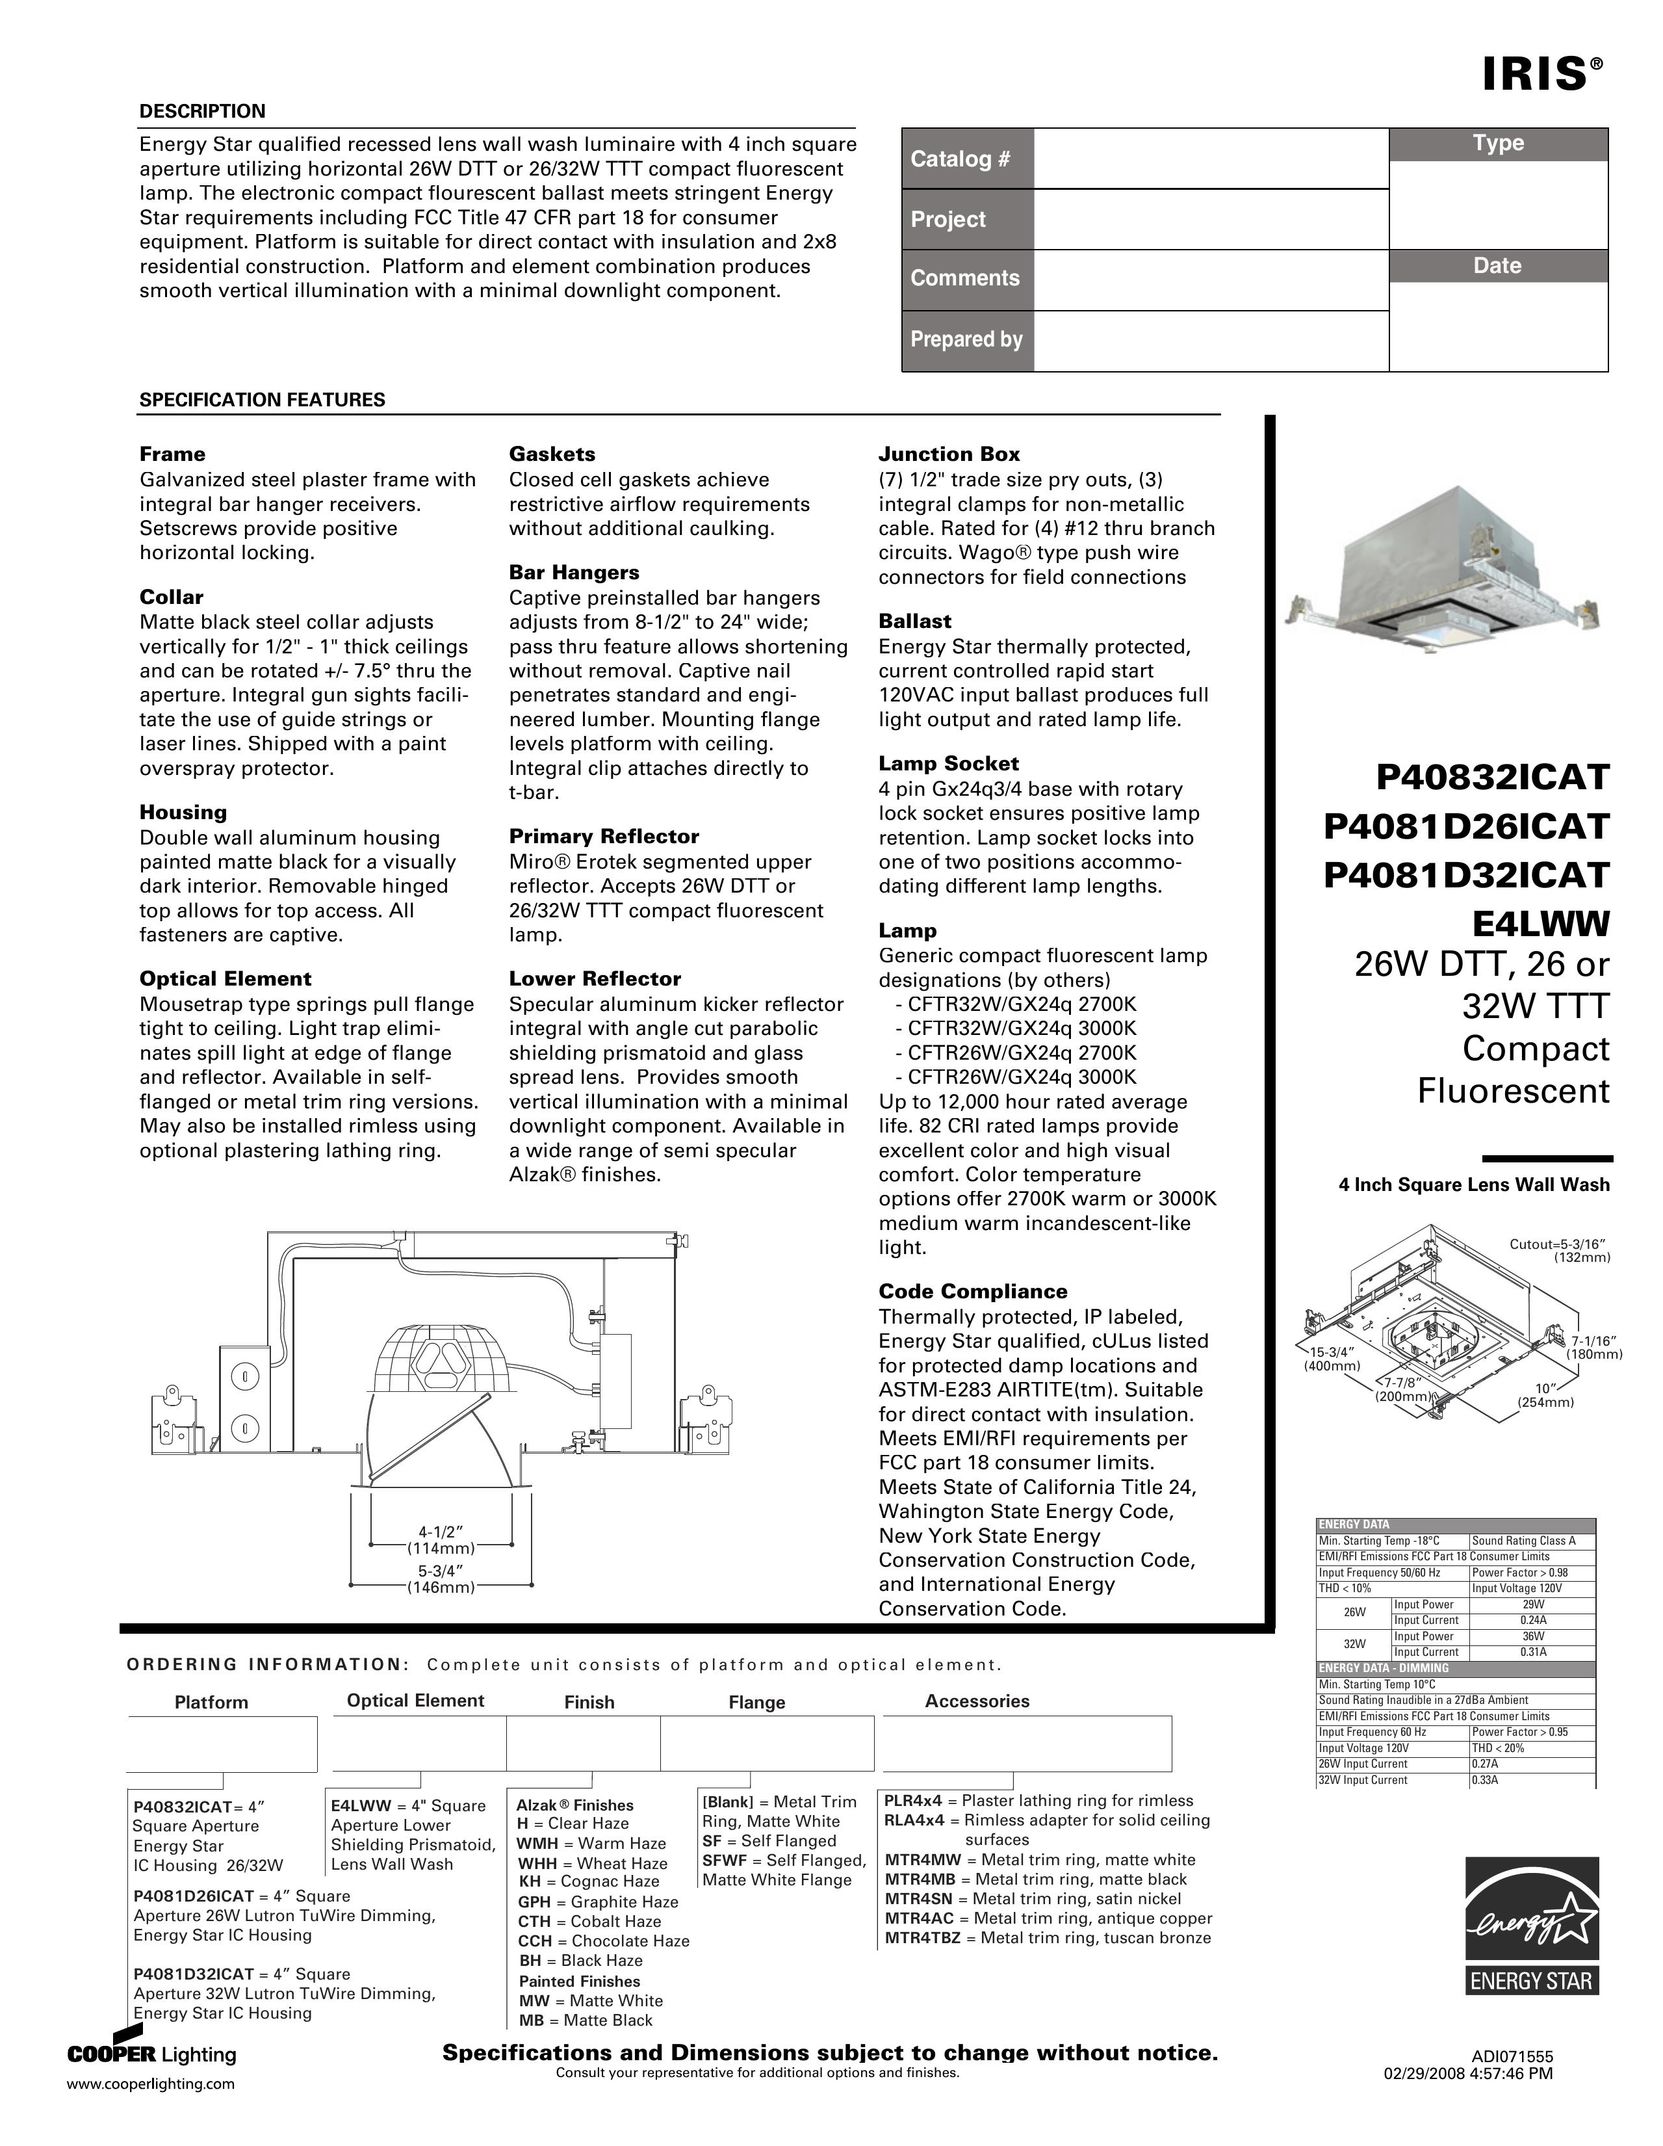 IRIS P40832ICAT Indoor Furnishings User Manual